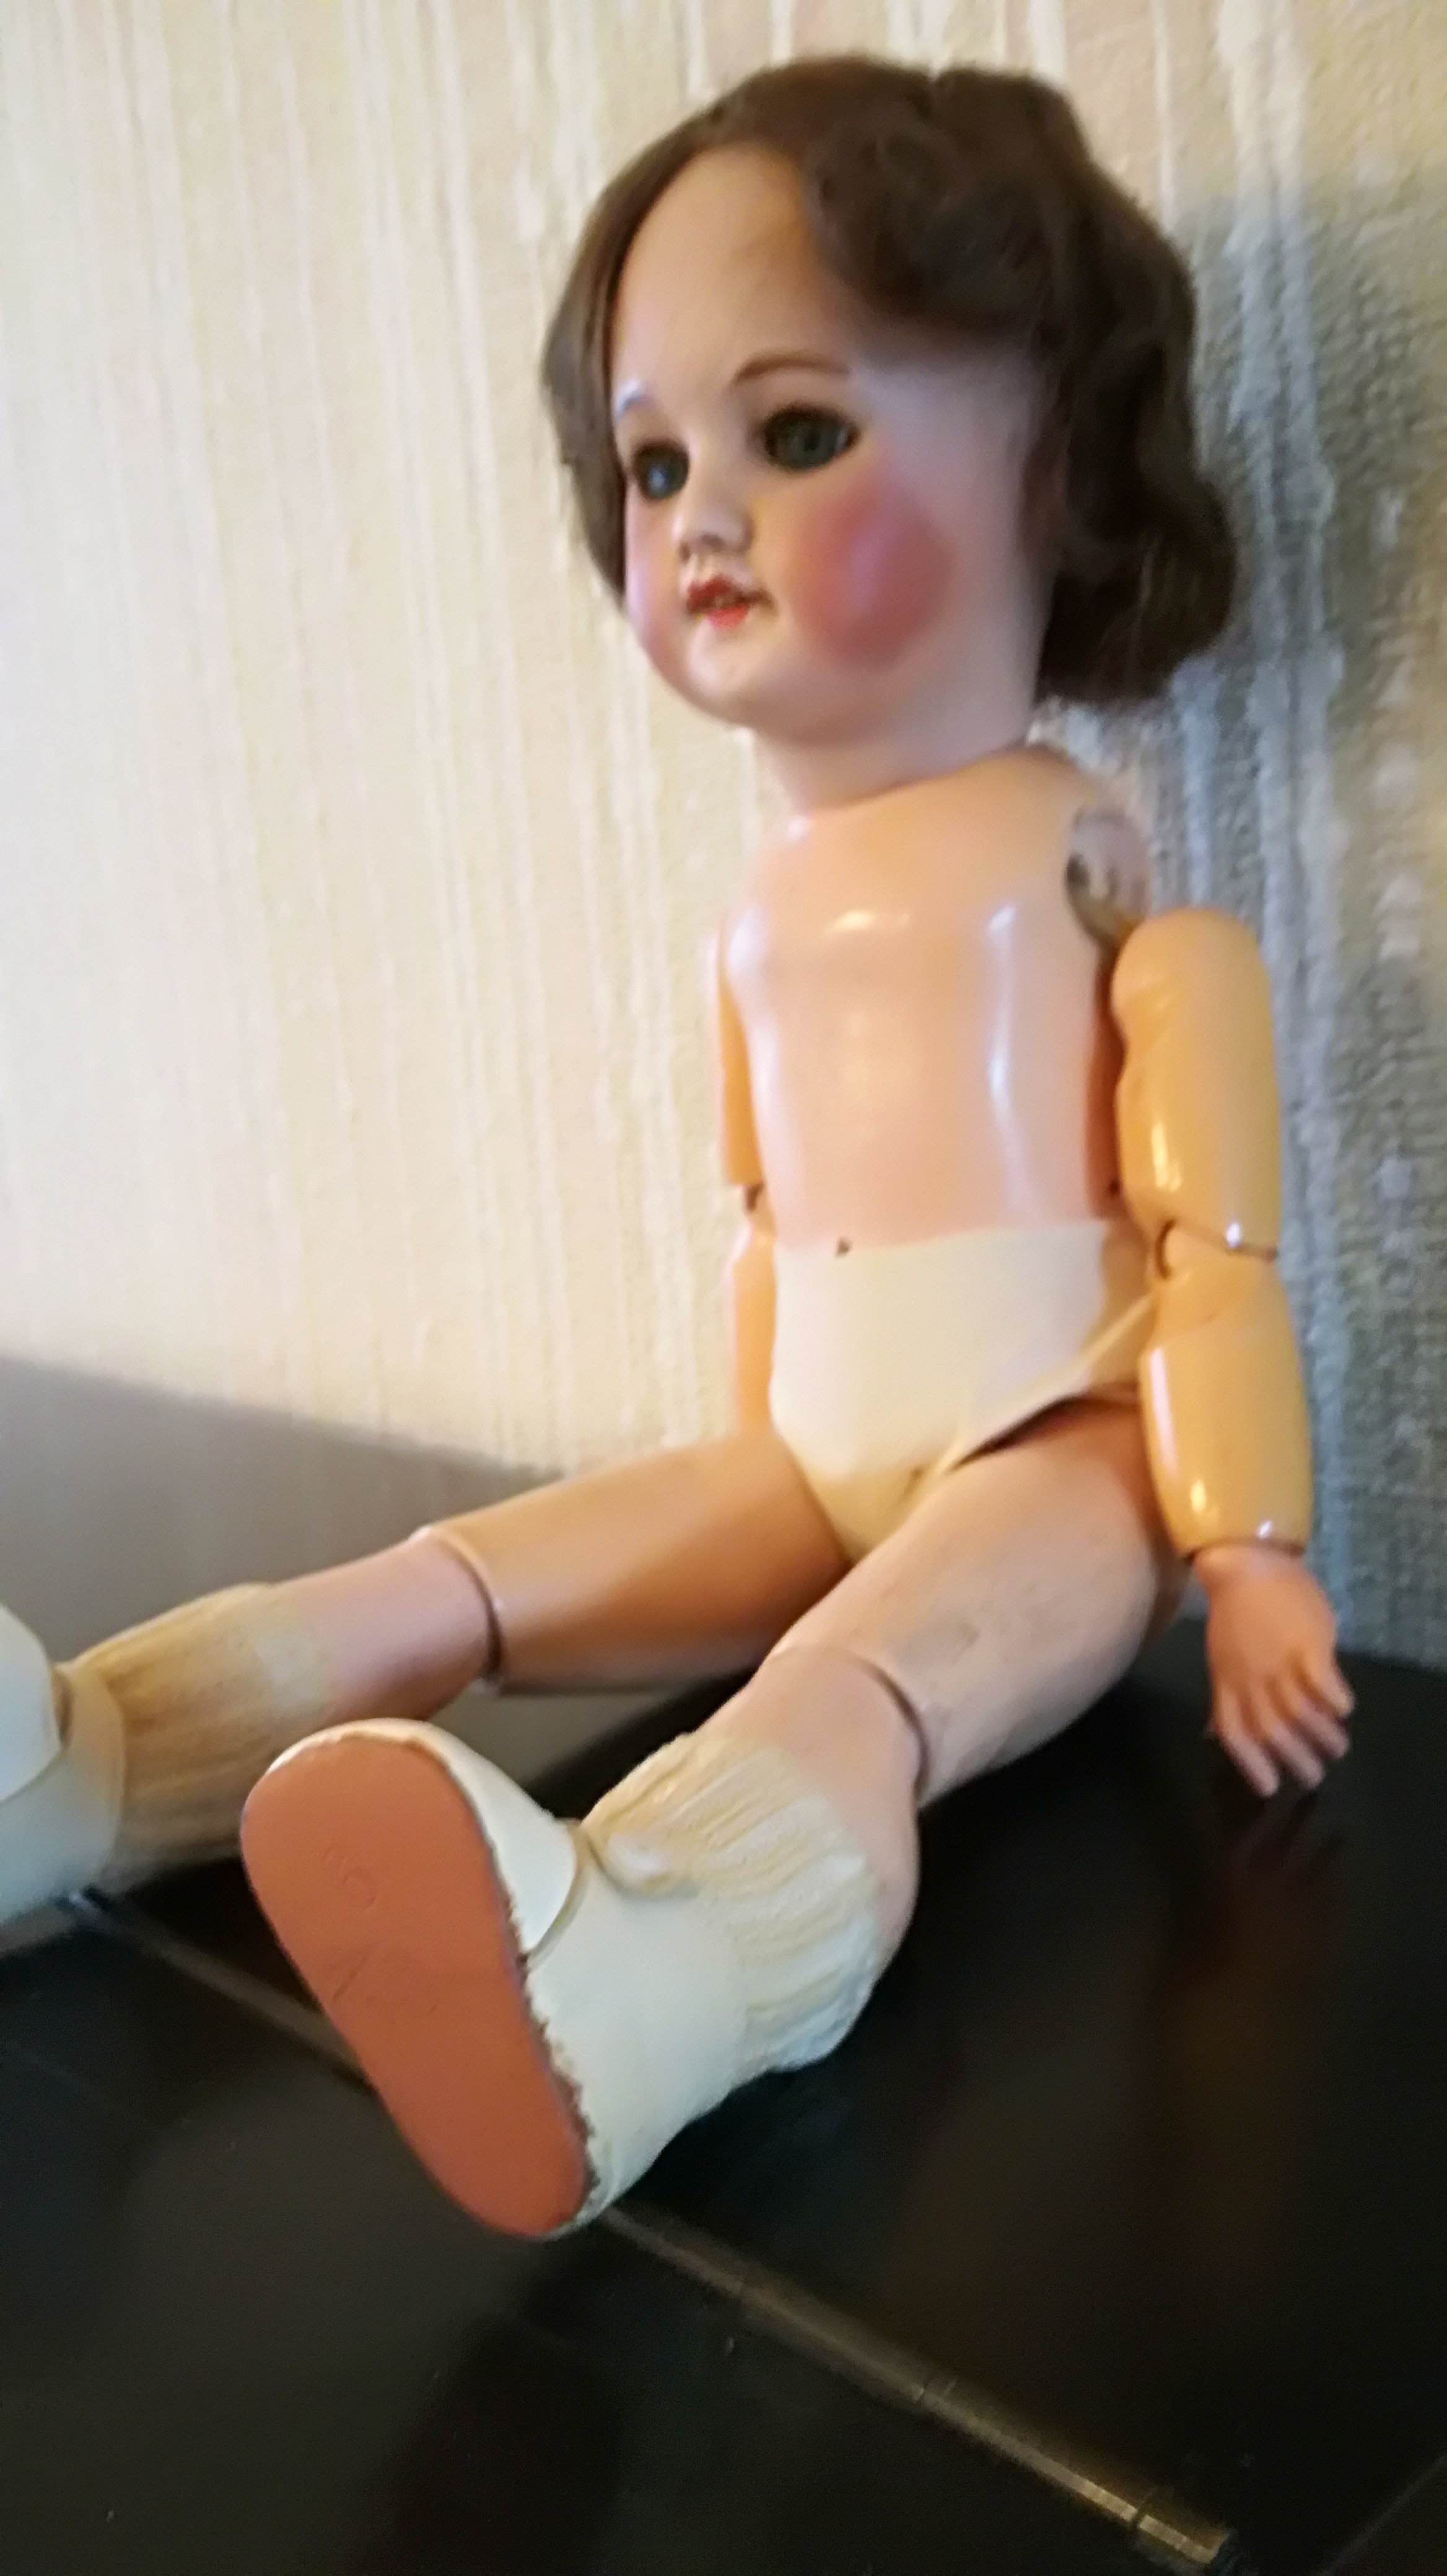 Une autre poupée ancienne 44 cm V8s0